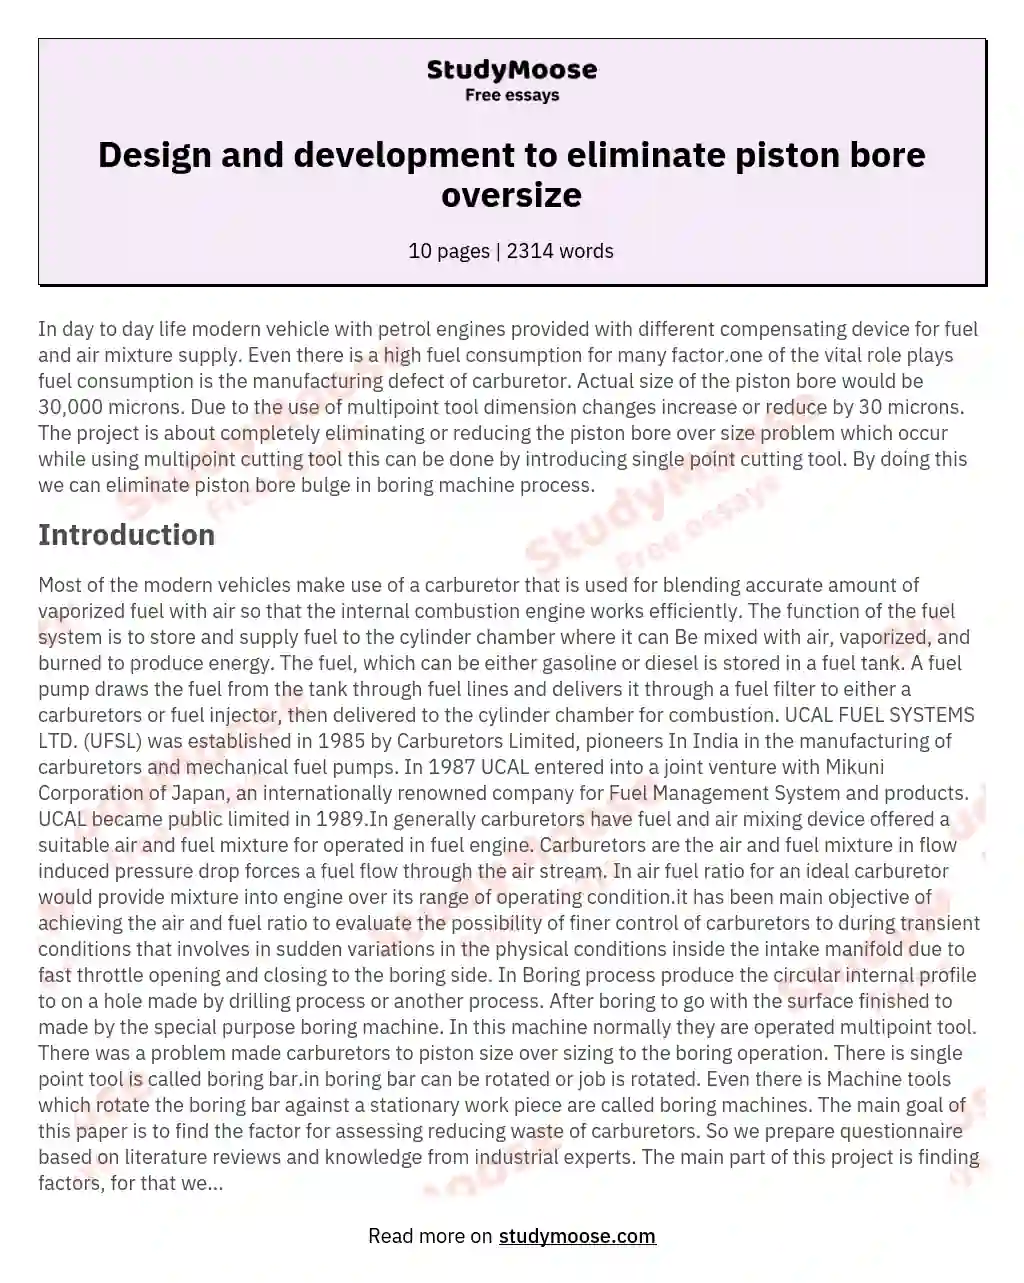 Design and development to eliminate piston bore oversize essay